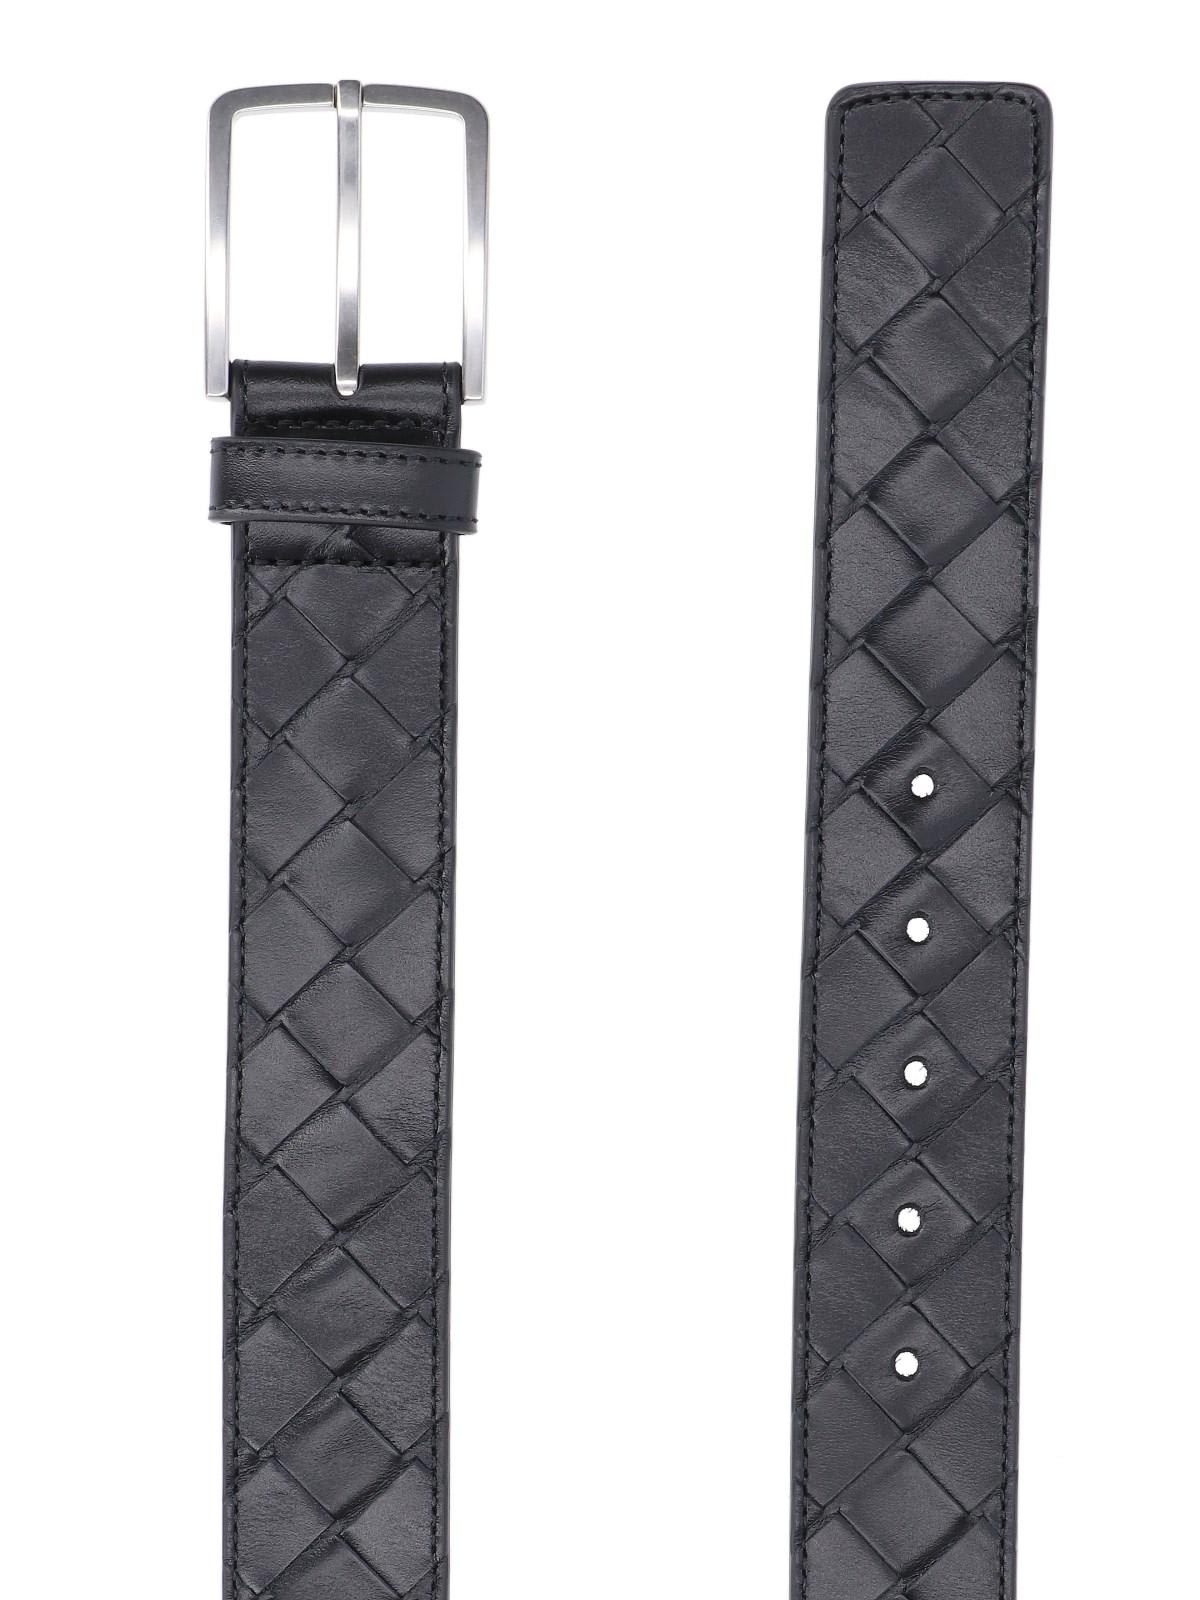 Bottega Veneta Belt In Black